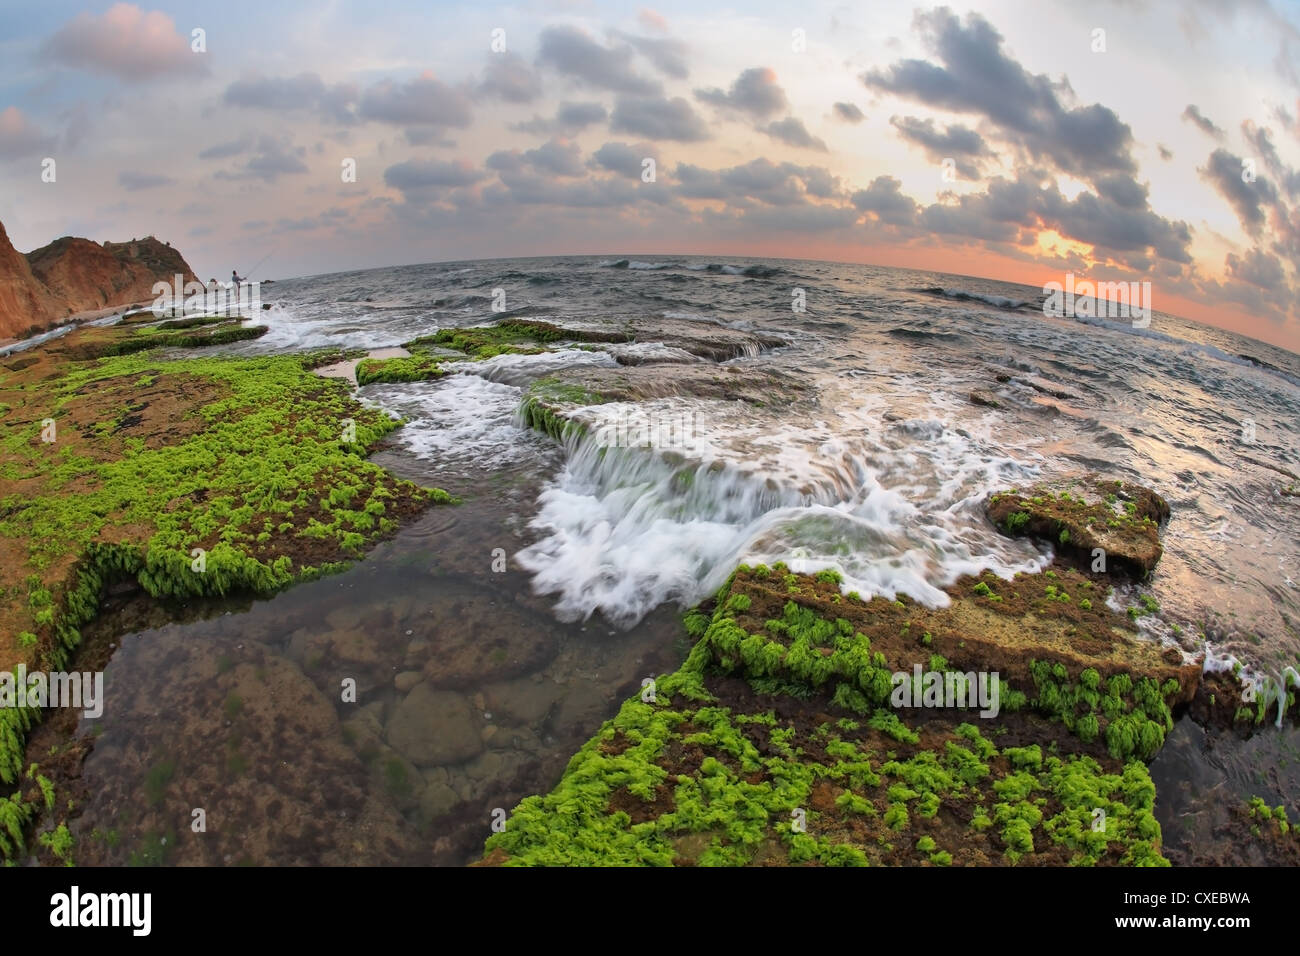 La mer Méditerranée à marée basse Photo Stock - Alamy